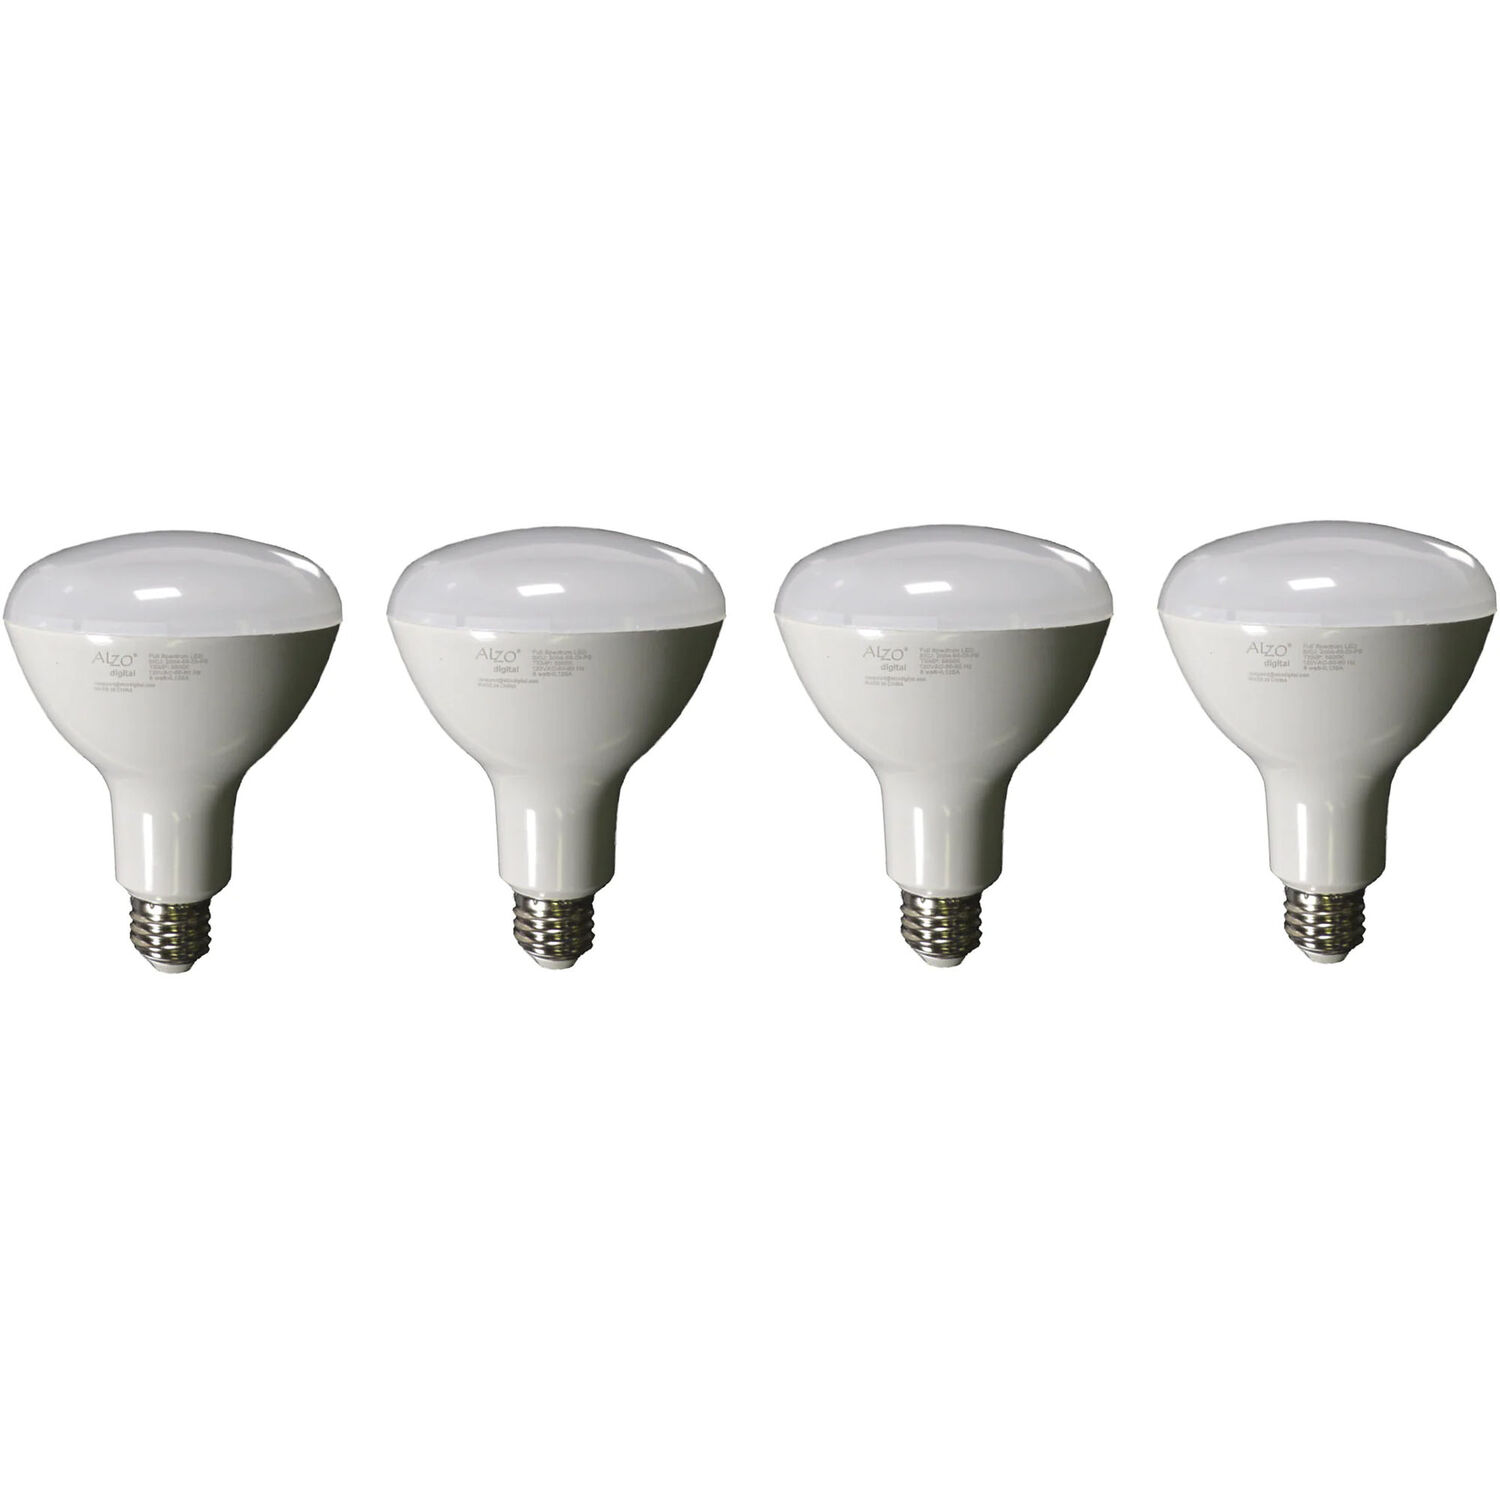 Bombilla Led de Espectro Completo Regulable Alzo Joyous Light Par20 Flood Light Bulb 4 Pack 6W 12